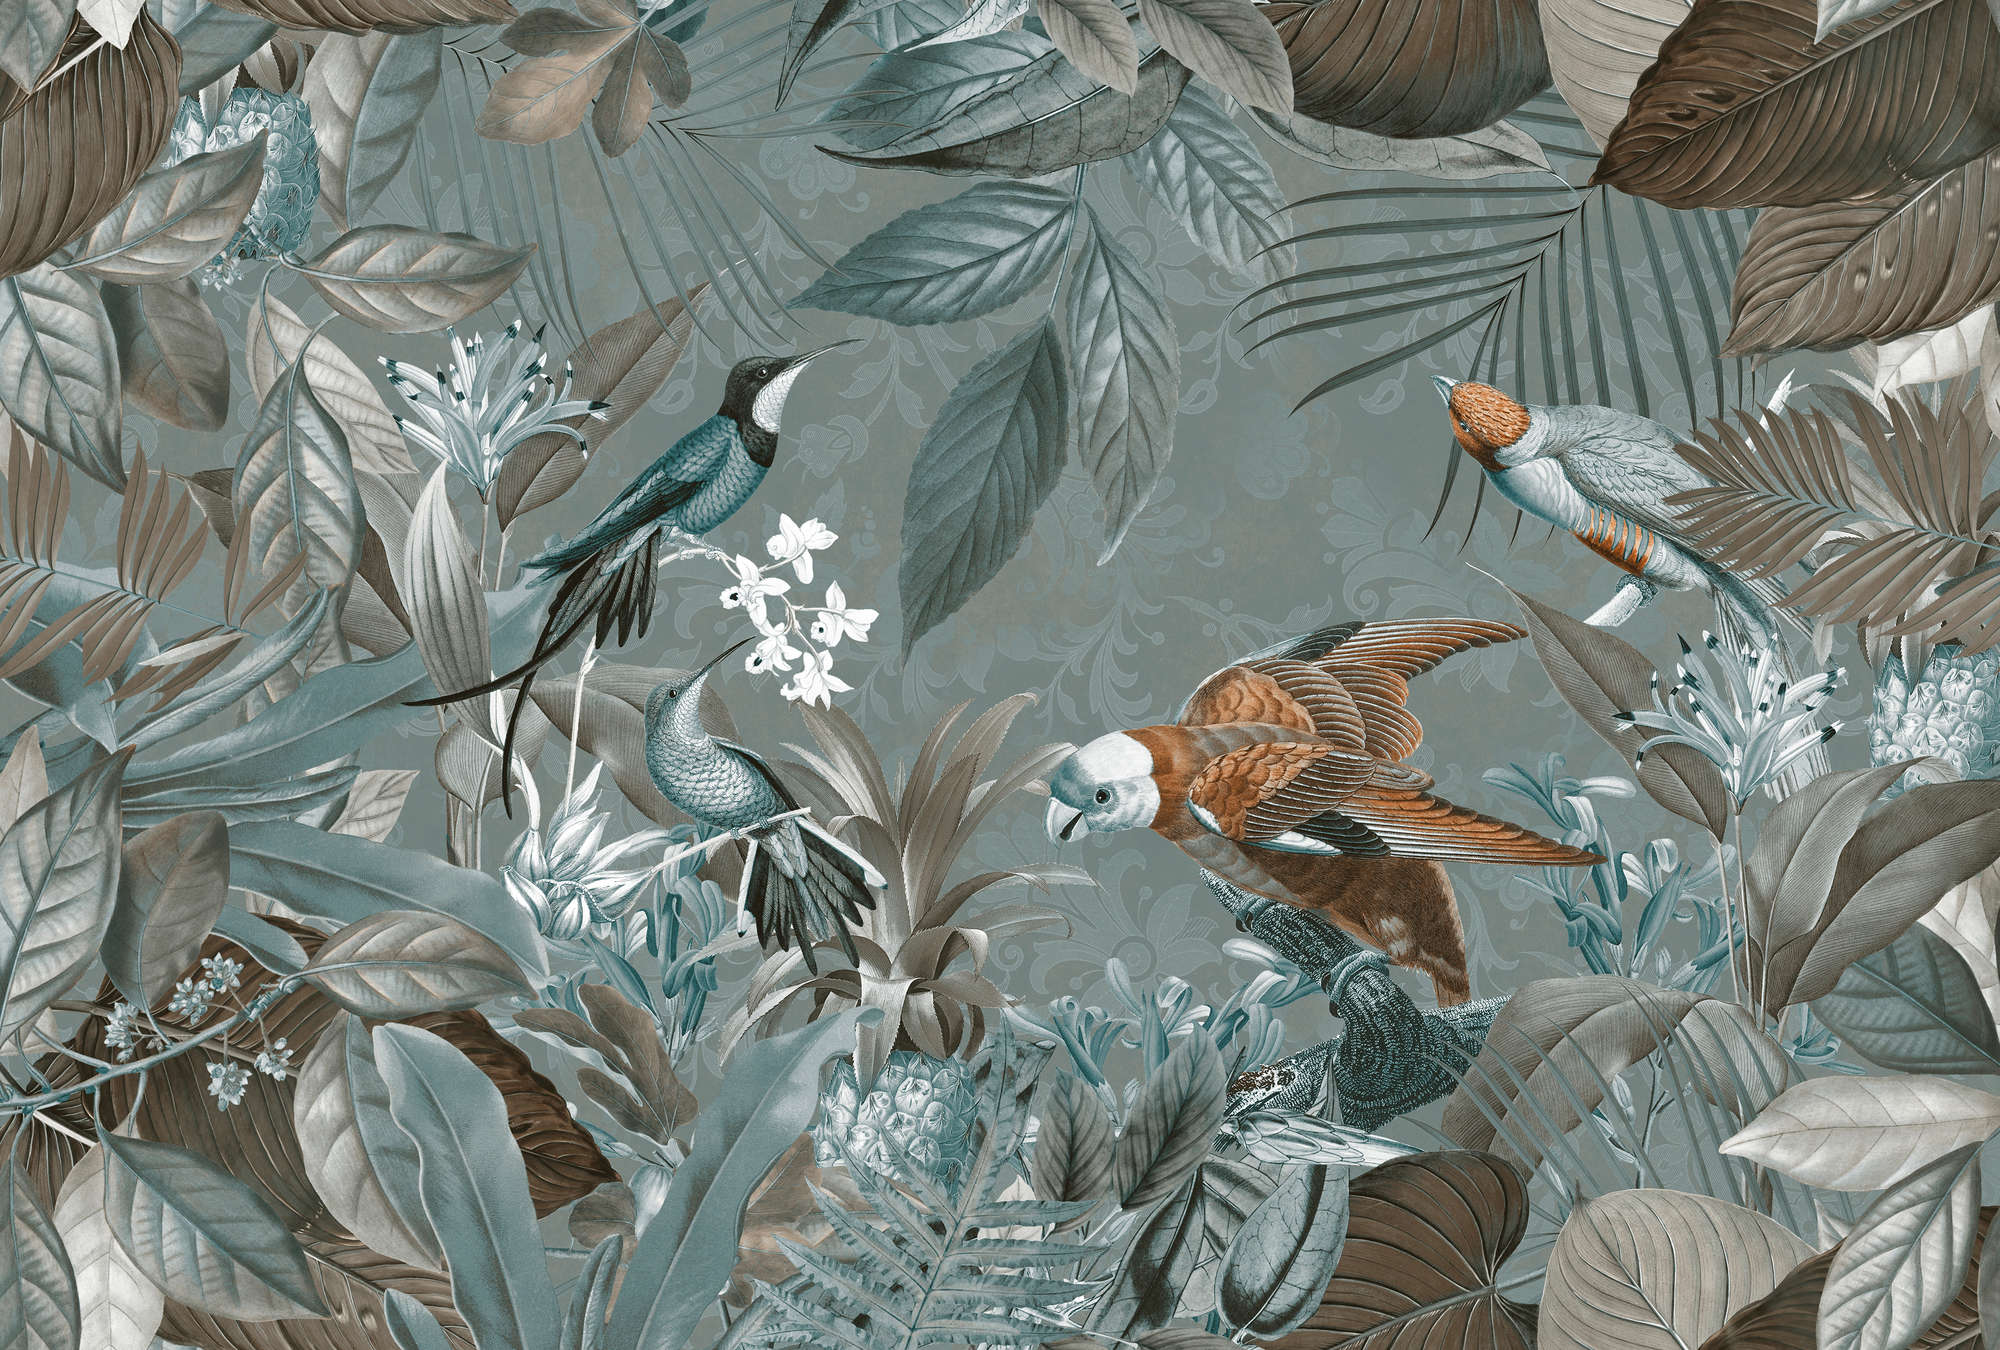             Papier peint jungle oiseaux & design tropical
        